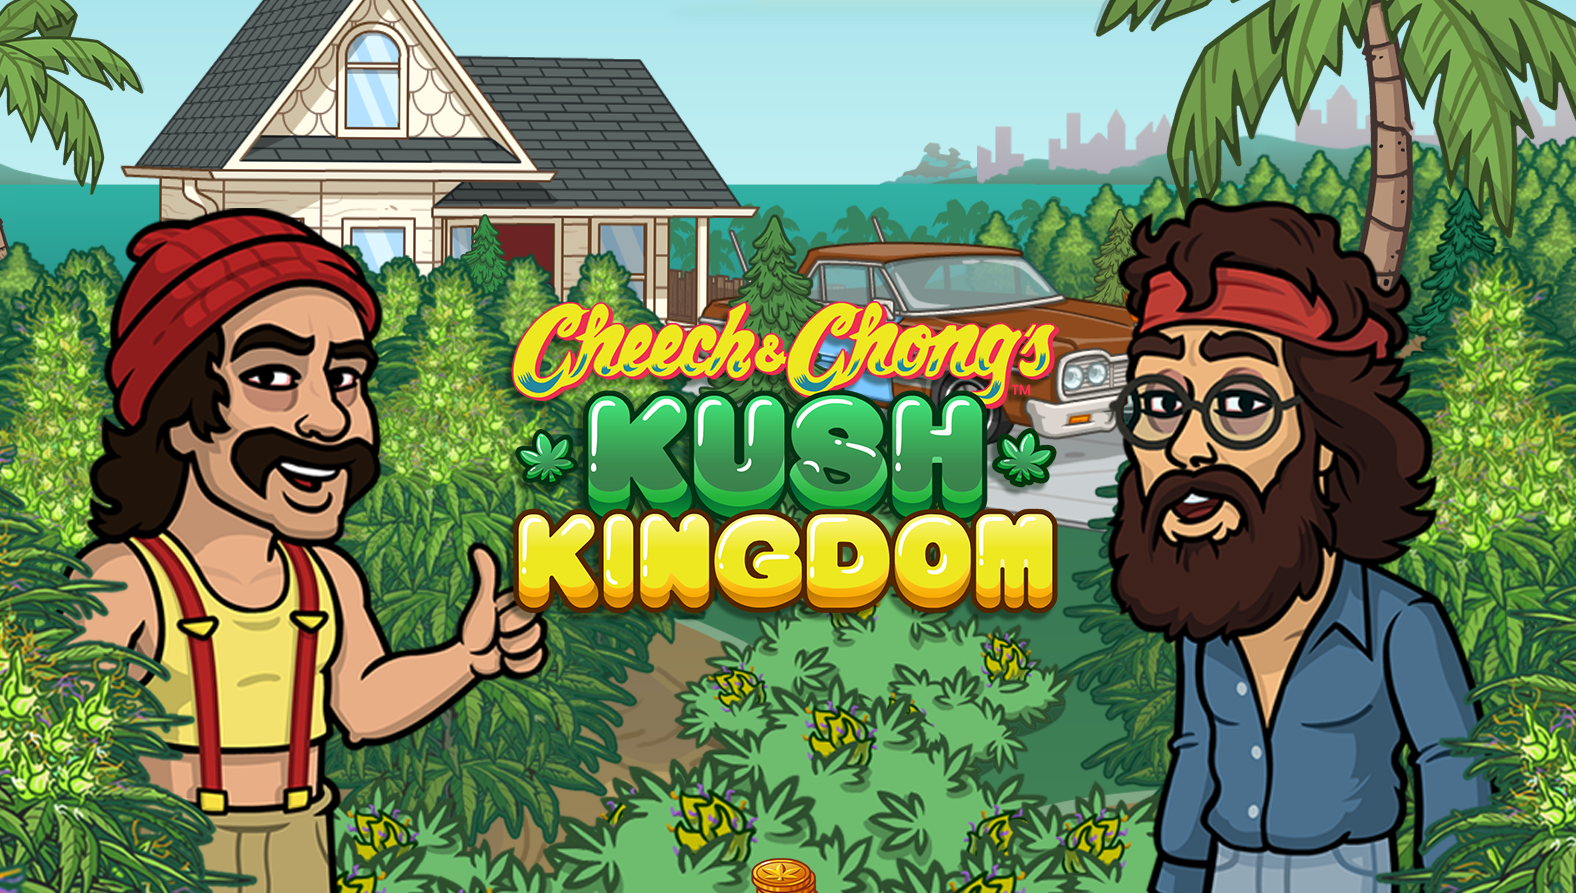 Cheech & Chong’s Kush Kingdom